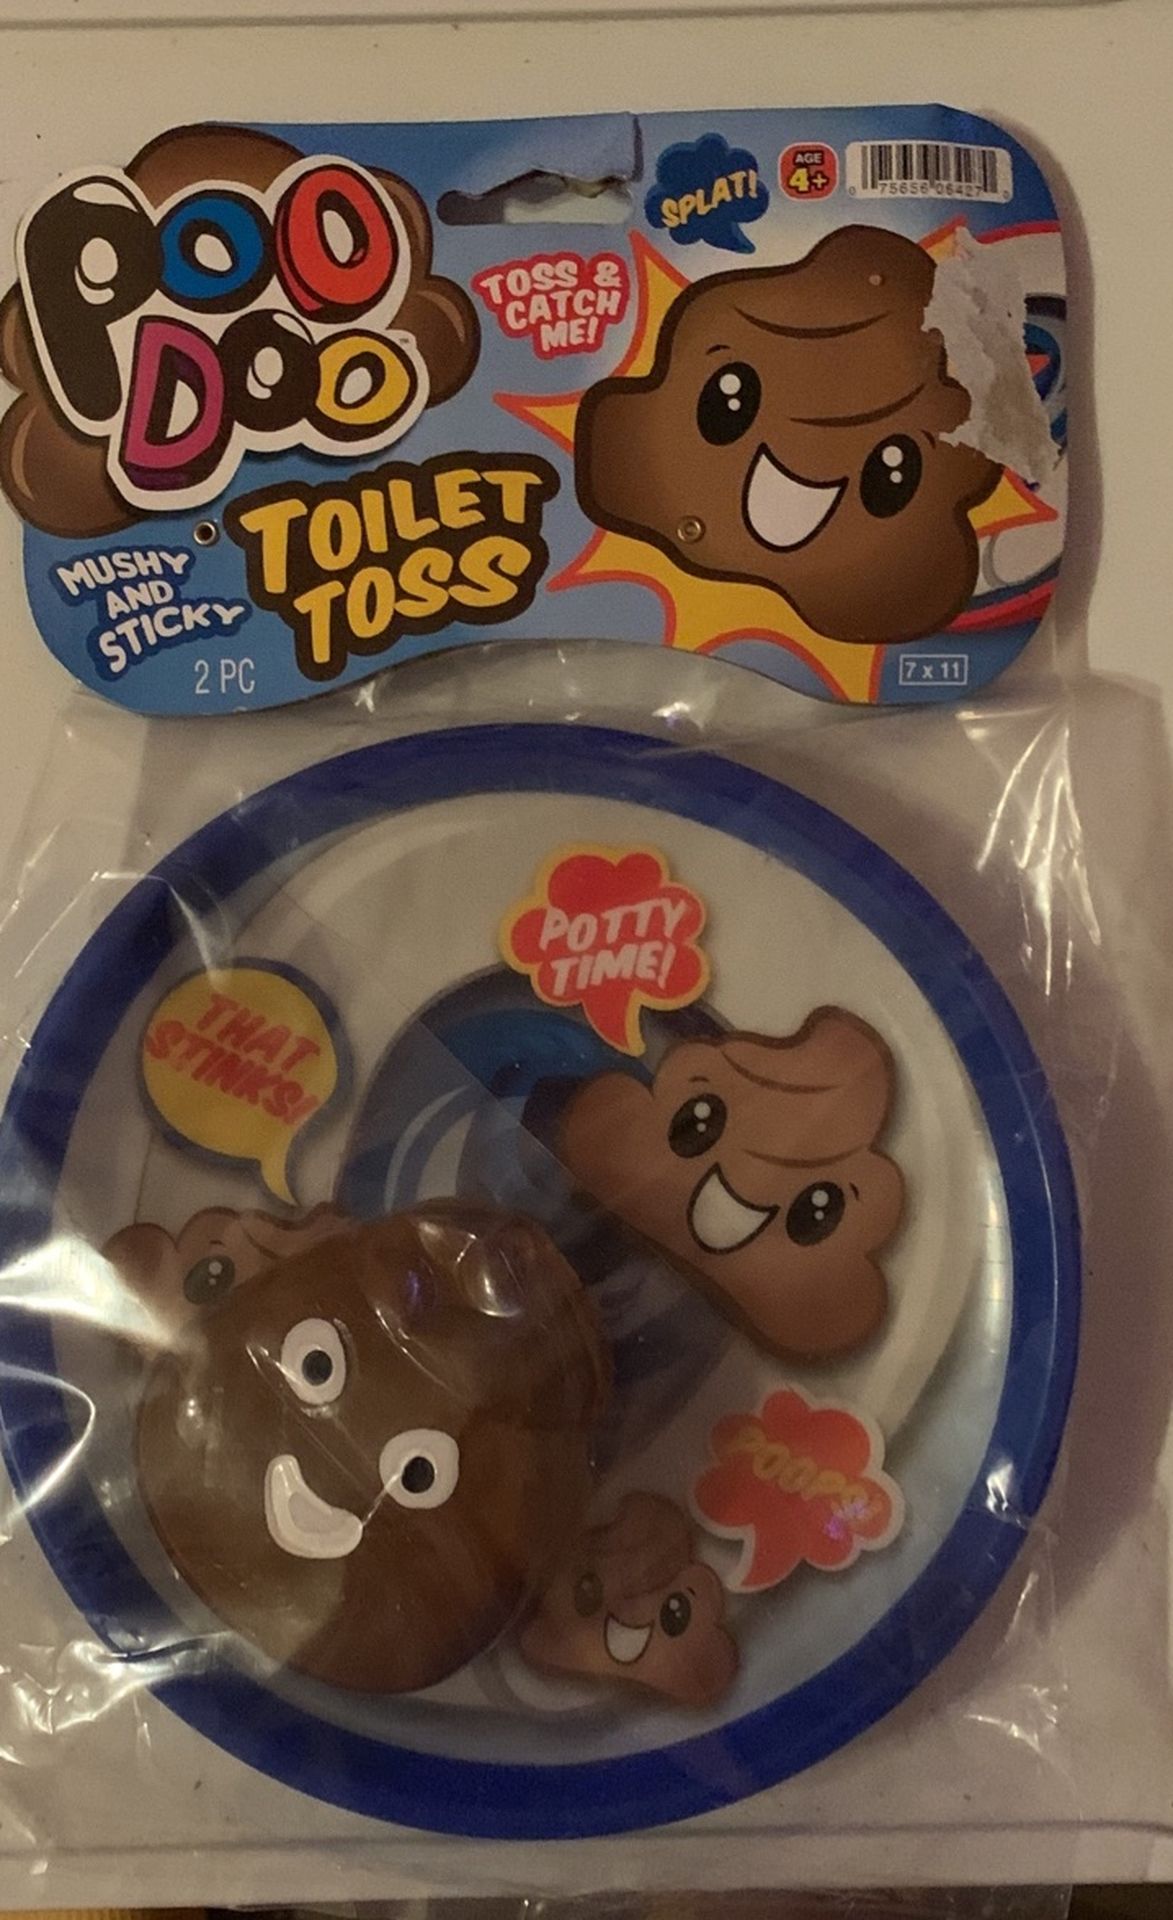 Poo Doo Toilet Toss